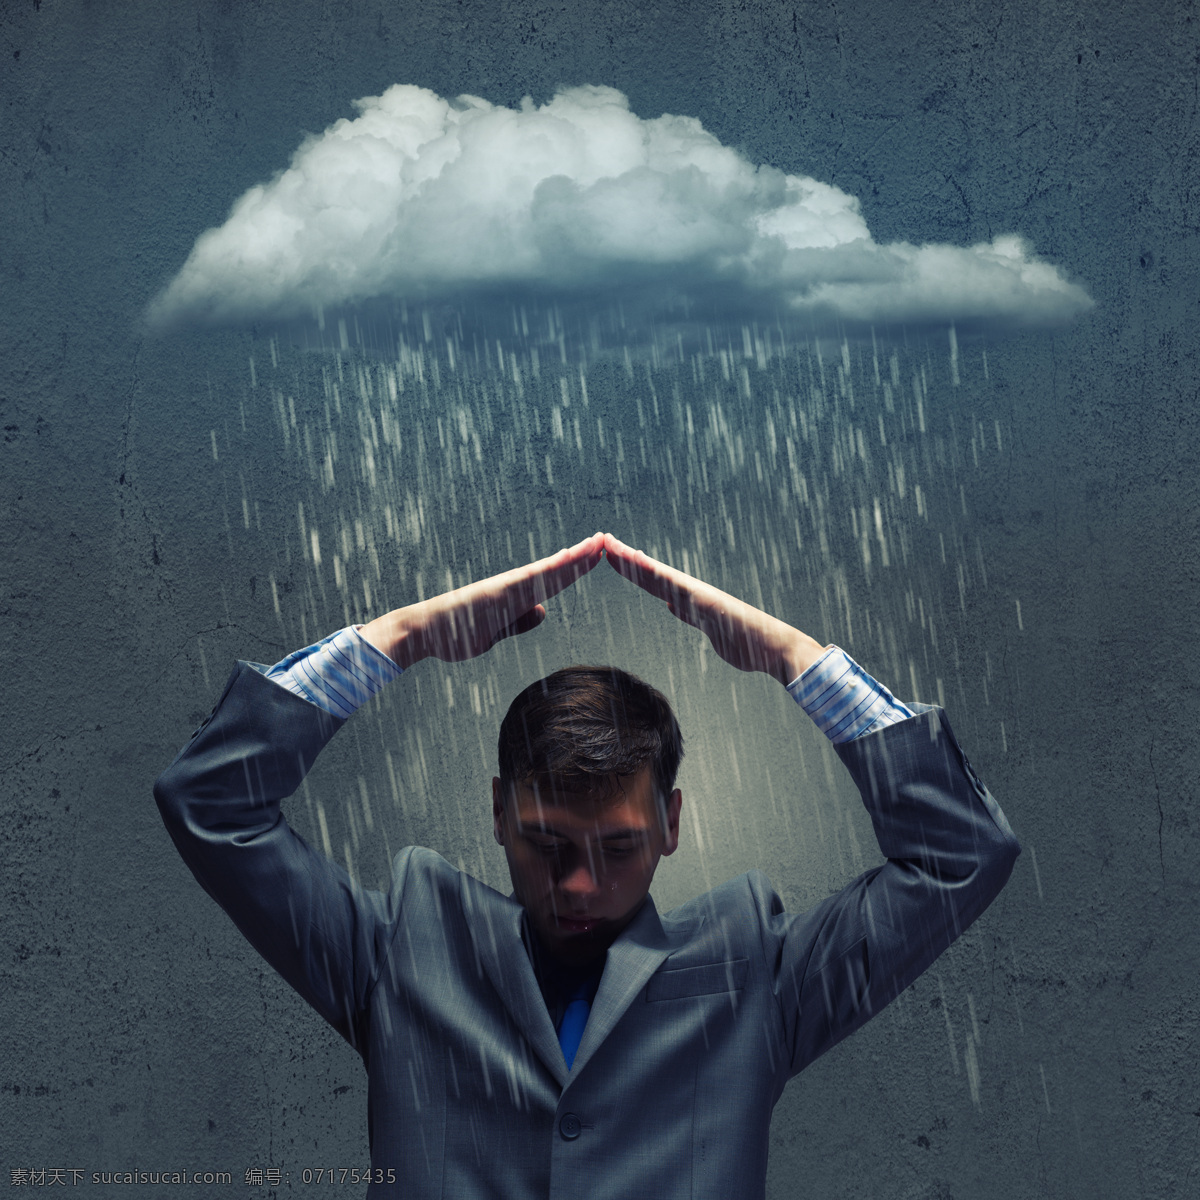 遮挡 雨 职业 男性 云朵 乌云 下雨 挡 商务男士 职业人物 现代商务 商务金融